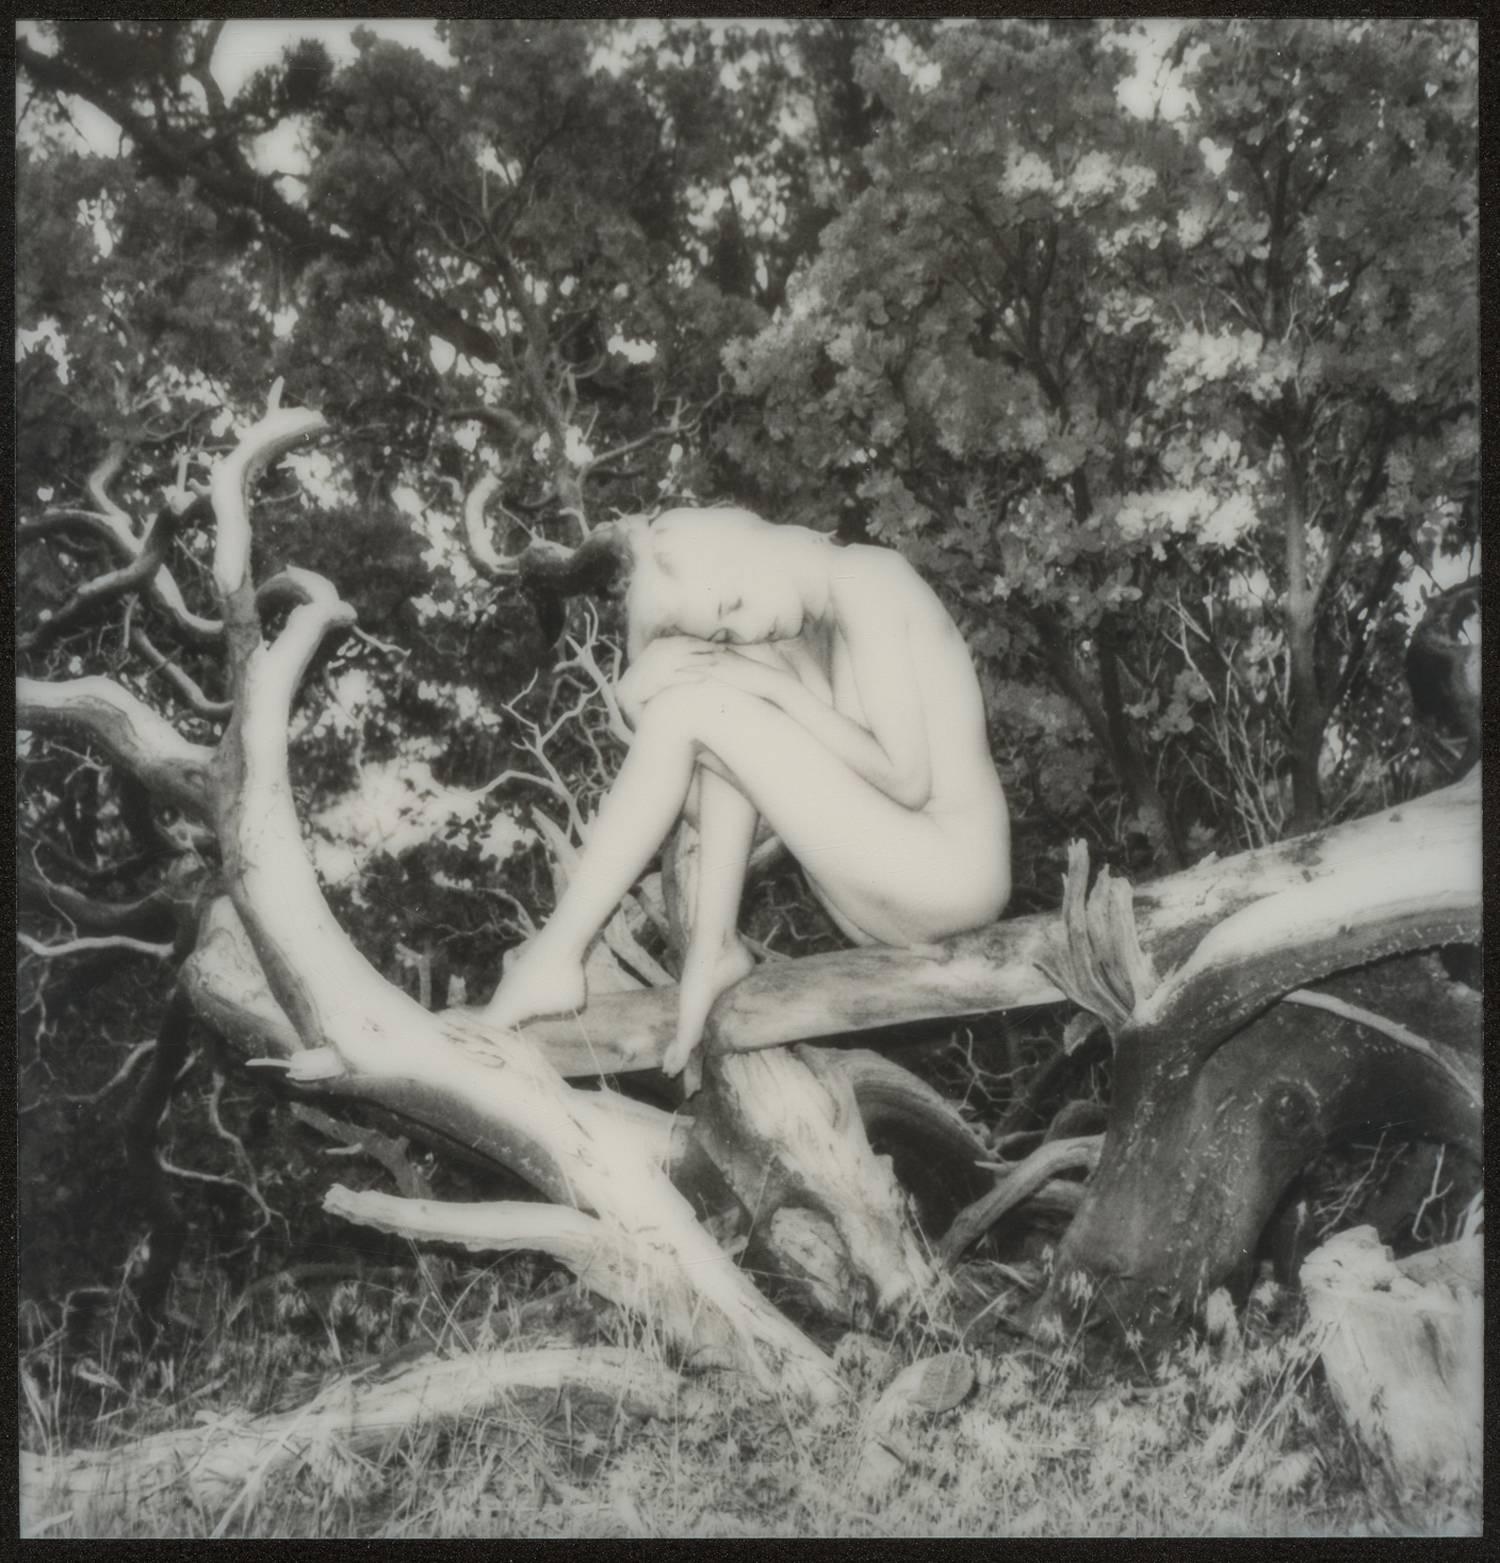 Kirsten Thys van den Audenaerde Nude Photograph - Fairytale in Black and White